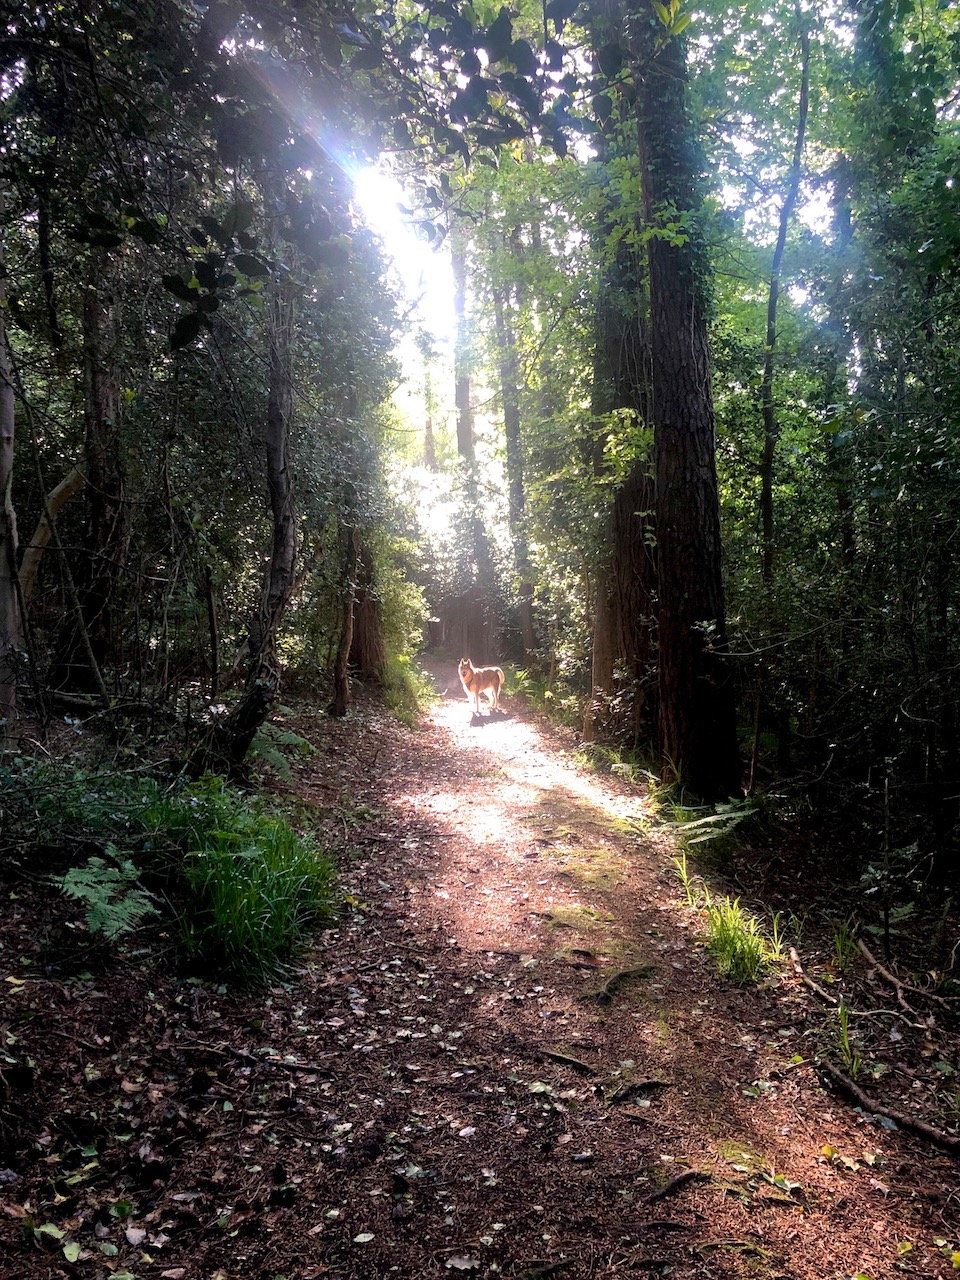 Oskar the huskymute on a woodland path in a sunbeam of fairytale light.